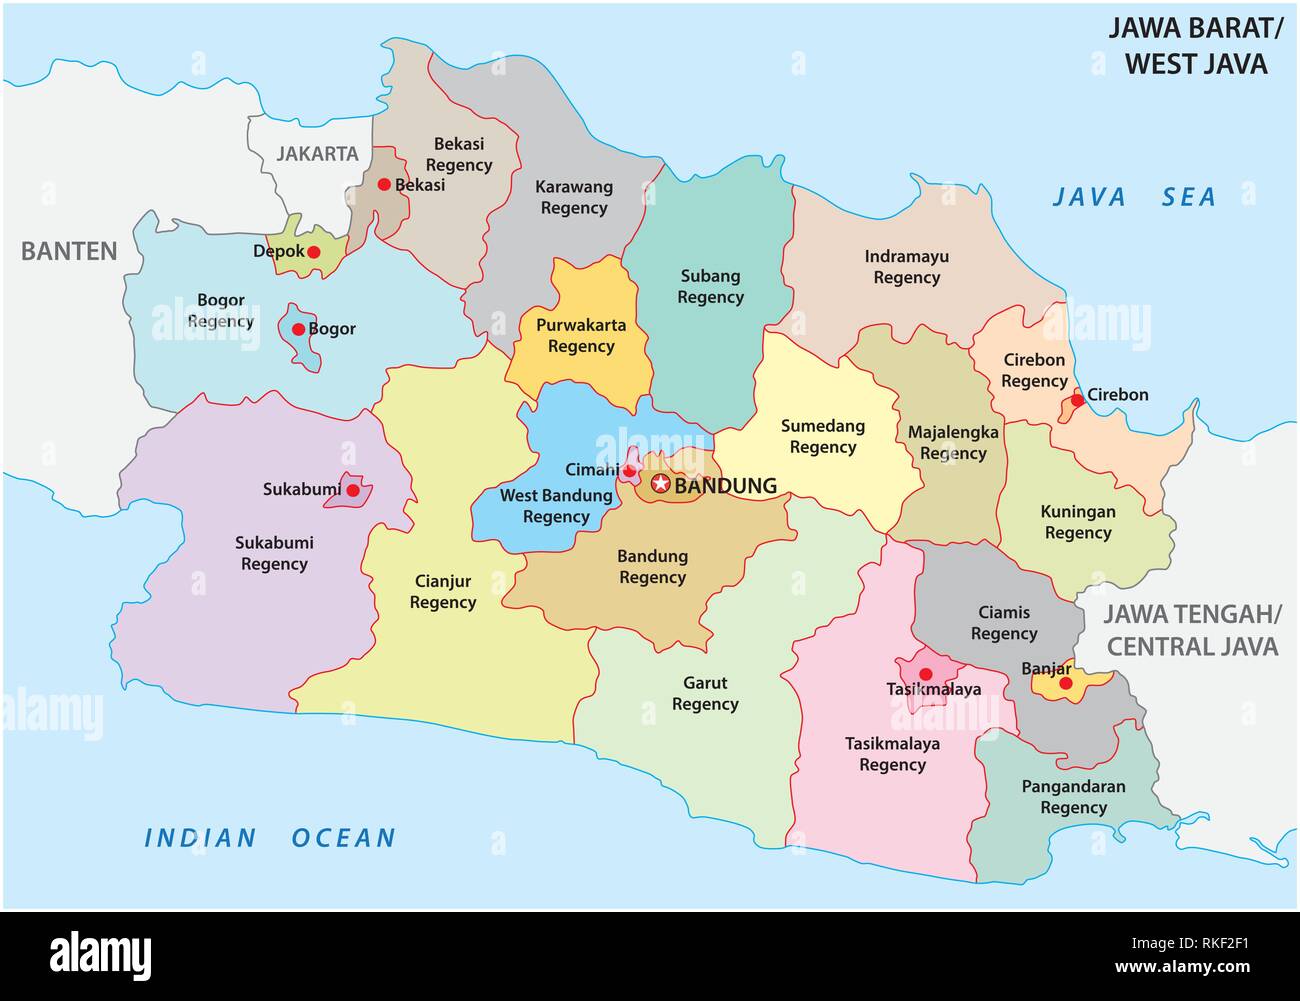 Jawa Barat, West Java administrative und politische Vektorkarte, Indonesien  Stock-Vektorgrafik - Alamy